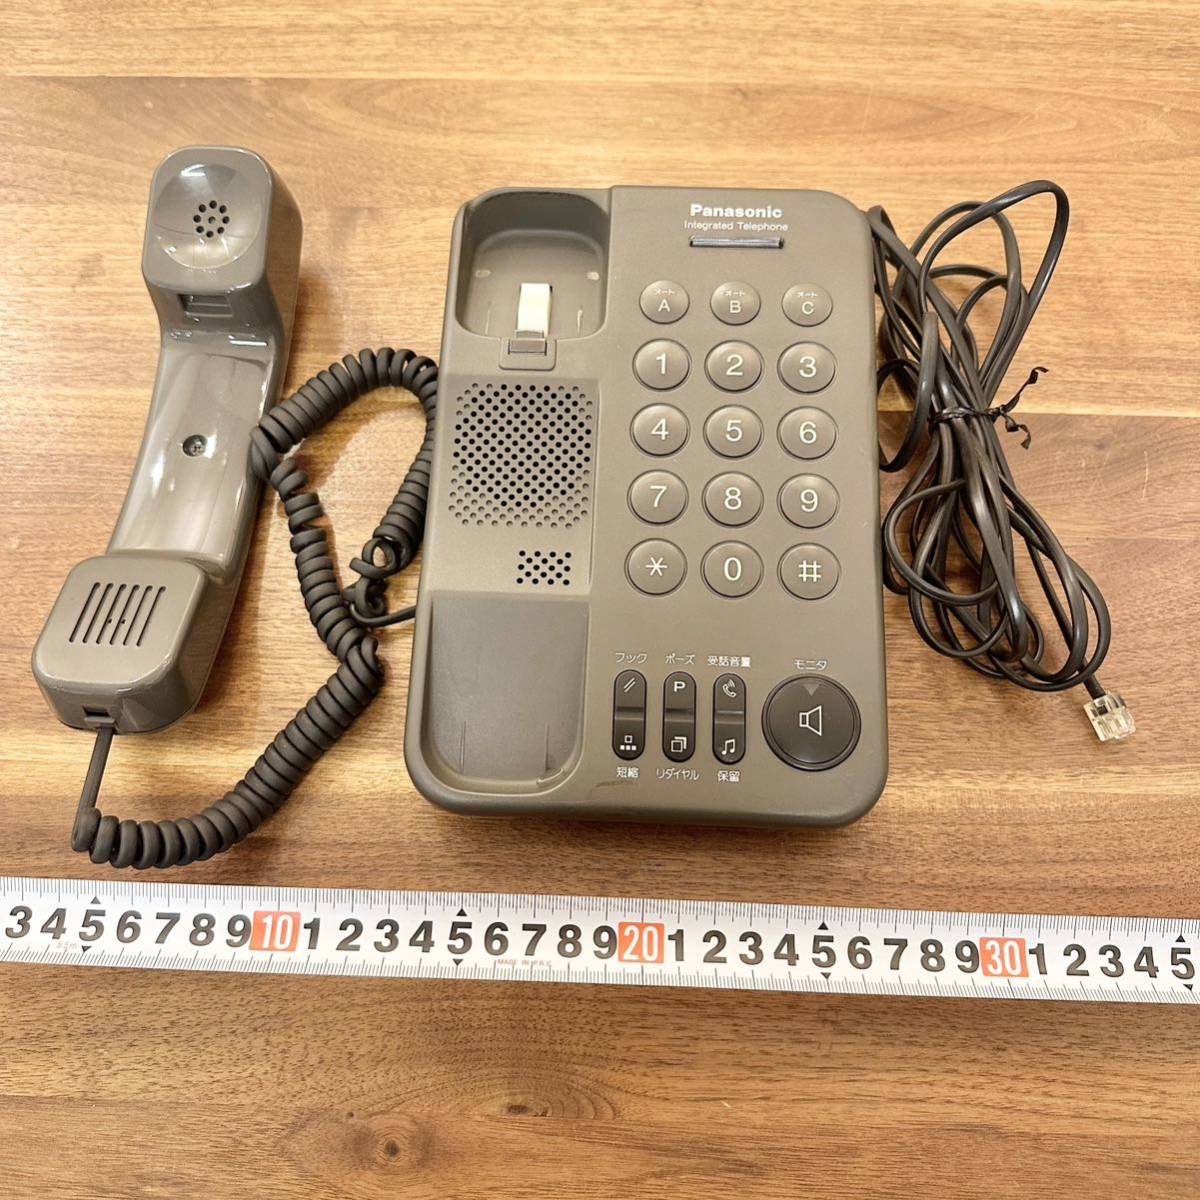 パナソニック Panasonic 電話機 昭和レトロ VE-F37 松下通信工業株式会社 NTT ブラック 固定電話 処分品の画像2